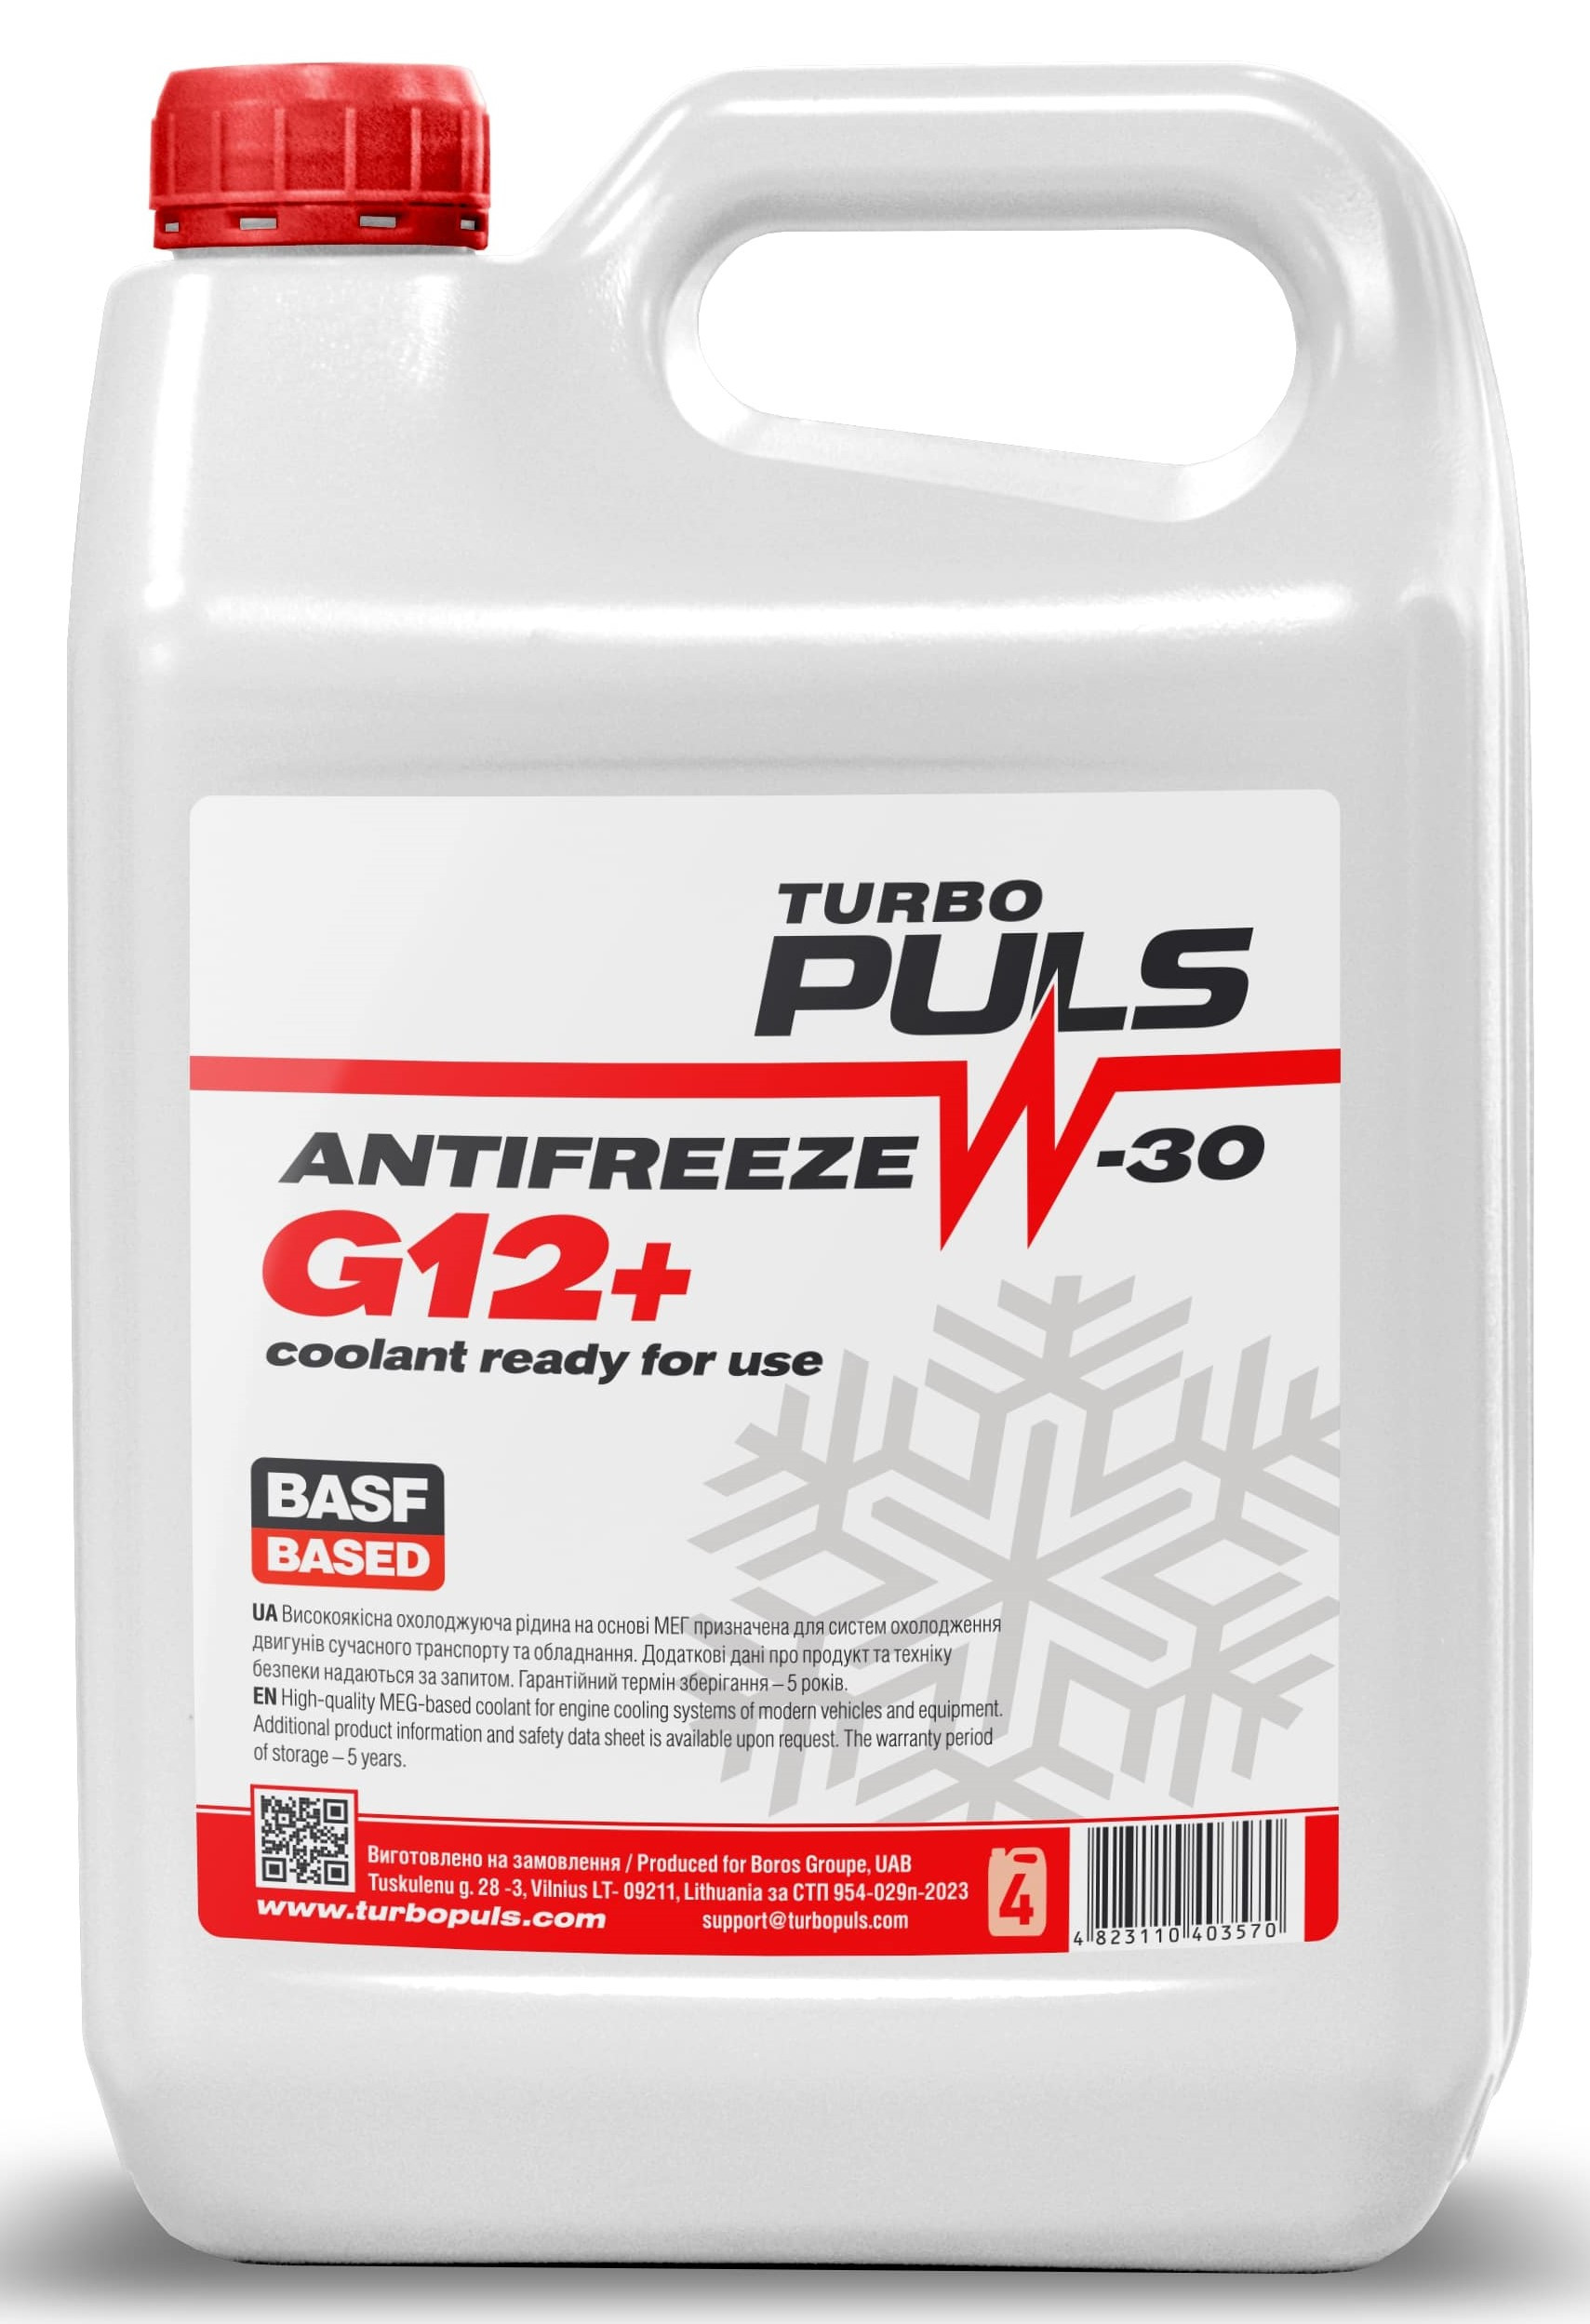 Антифриз TURBO PULS ANTIFREEZE -30 G12+ красный 3.6кг